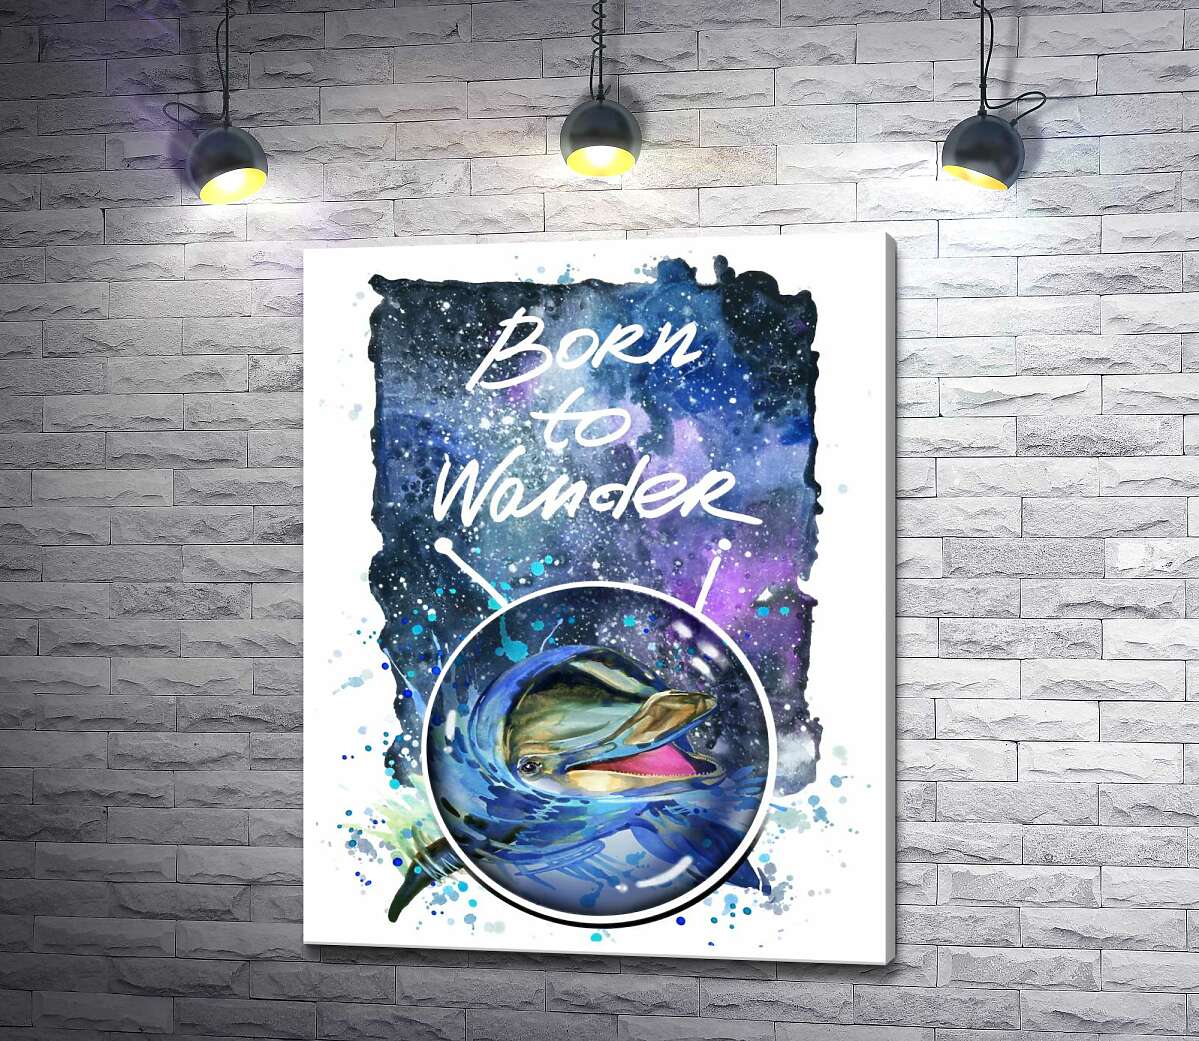 картина Дельфин выглядывает из воды в космическое пространство рядом с названием "born to wander"